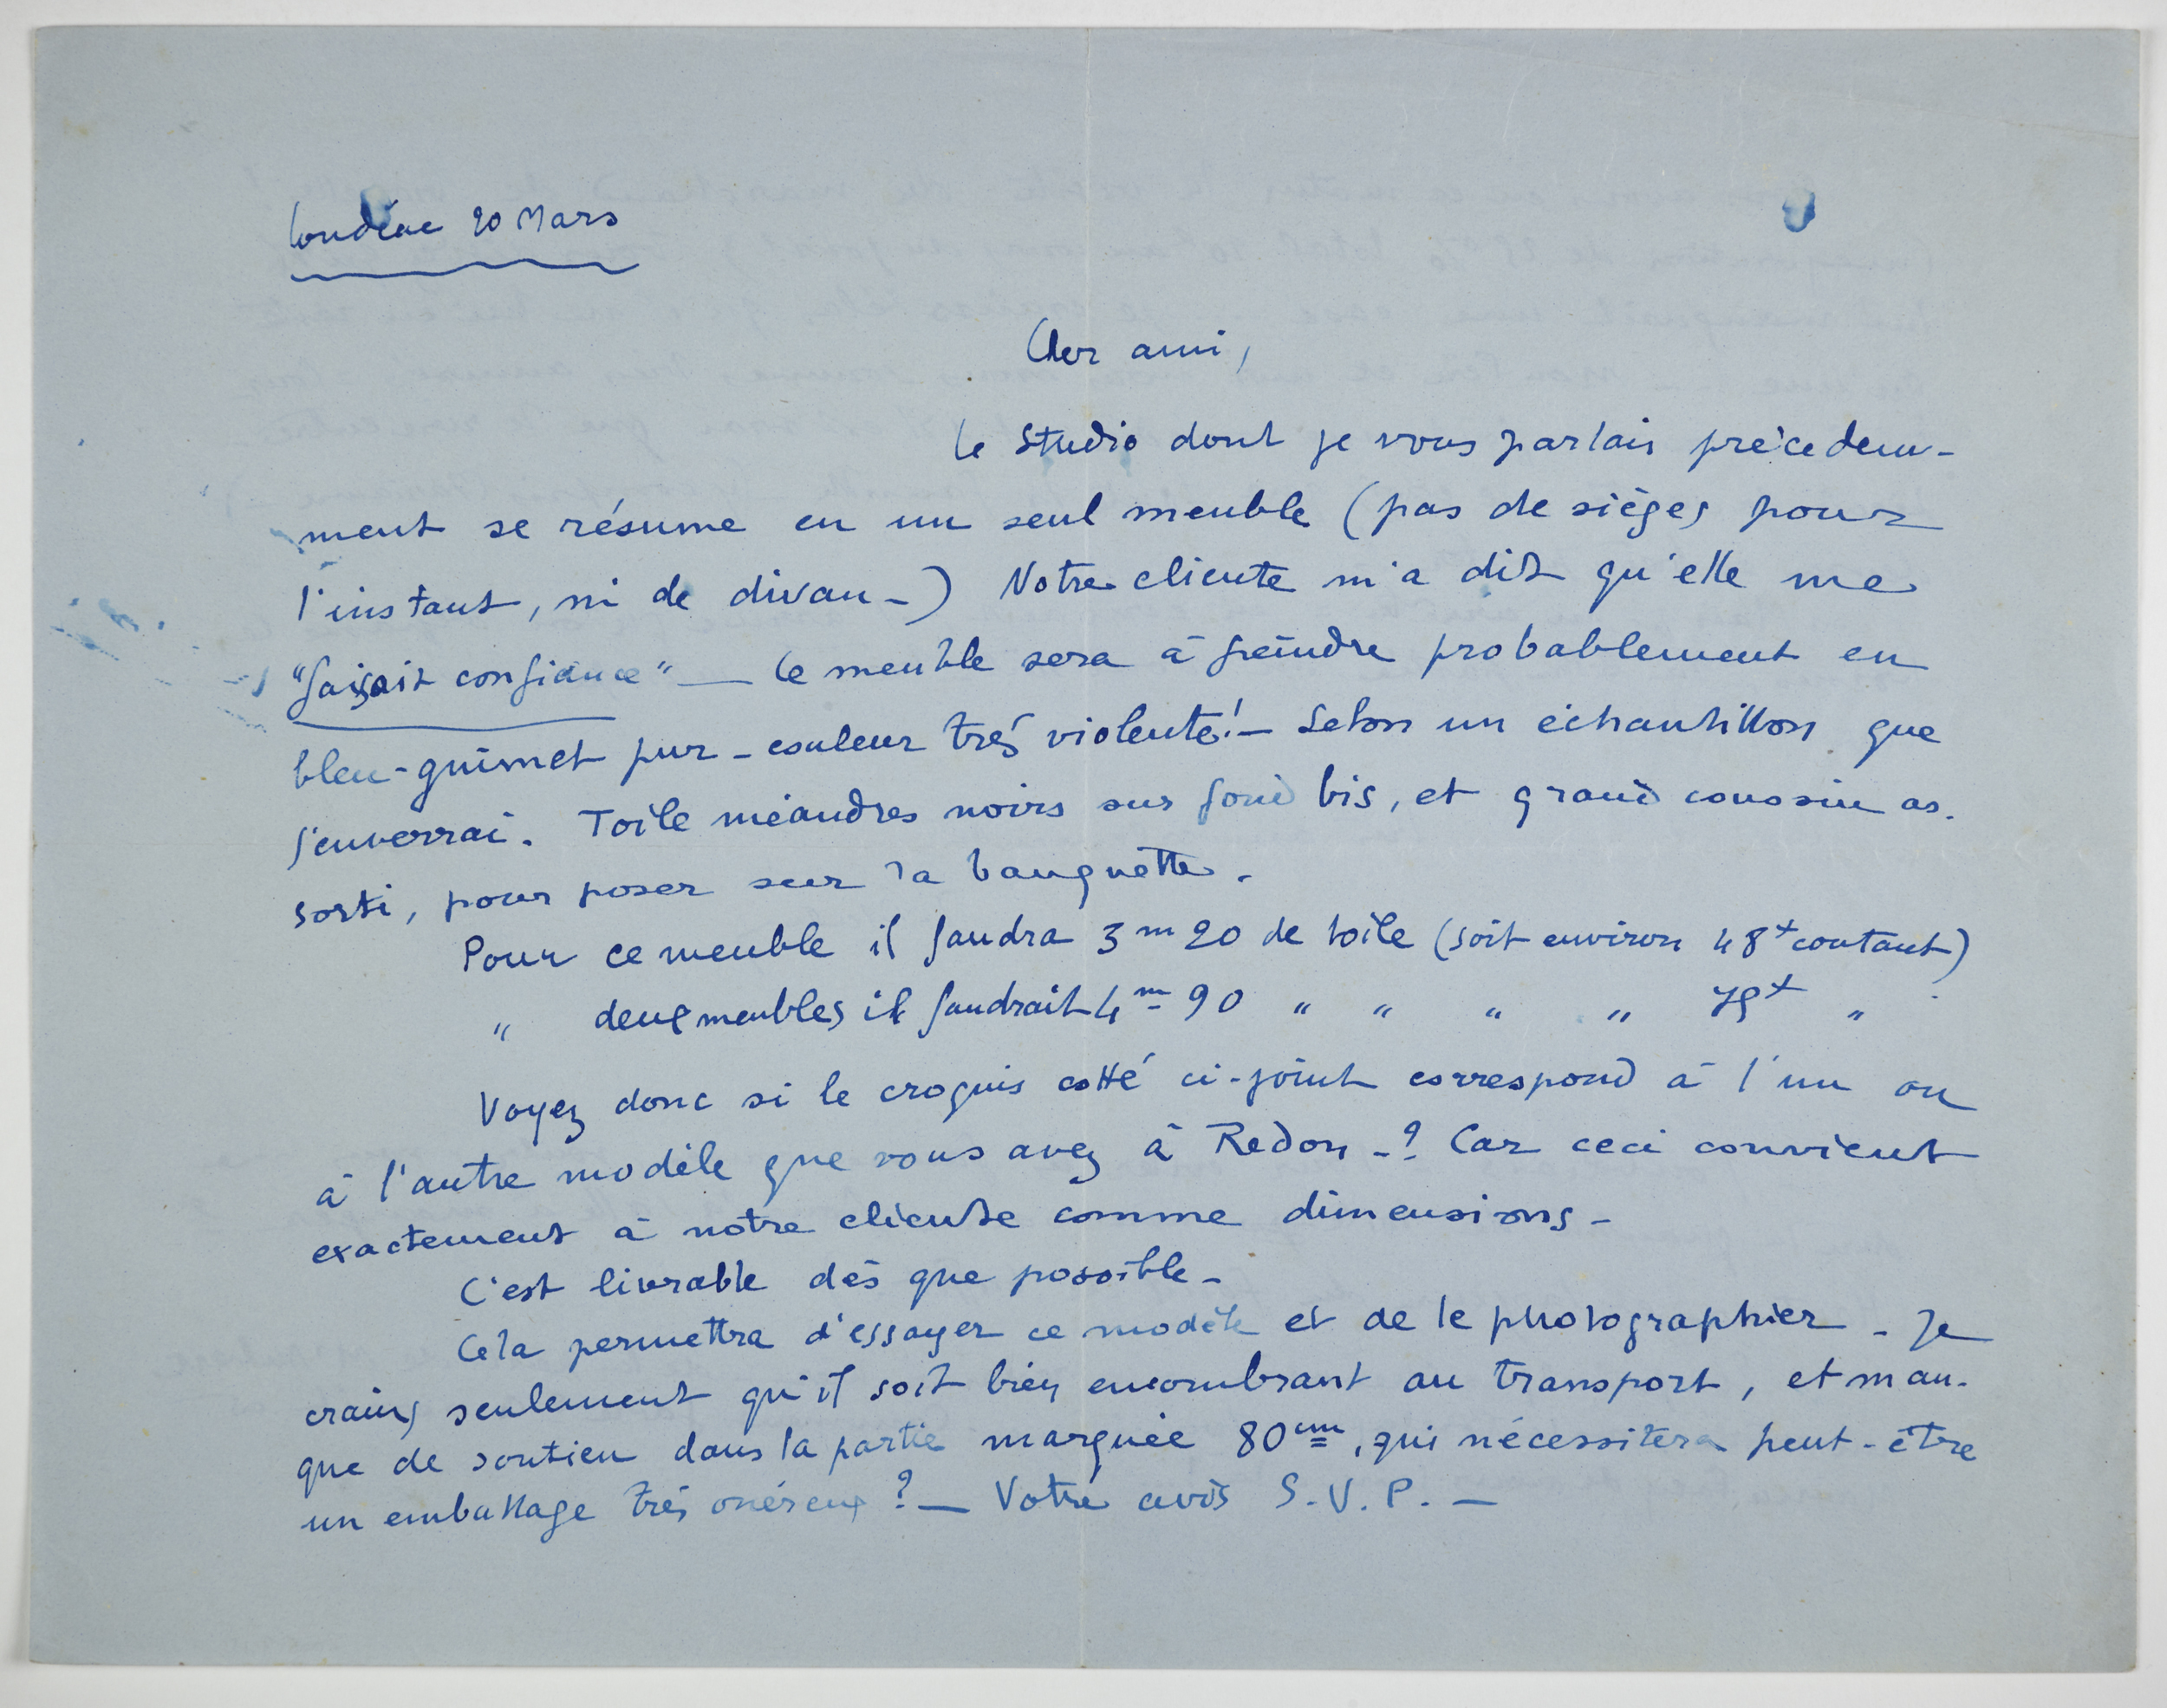 Lettre de Jeanne Malivel à Gaston Sébilleau. Correspondance entre 1920 et 1925. Source : collections du Musée de Bretagne.  Numéro d'inventaire : 2006.0007.15 